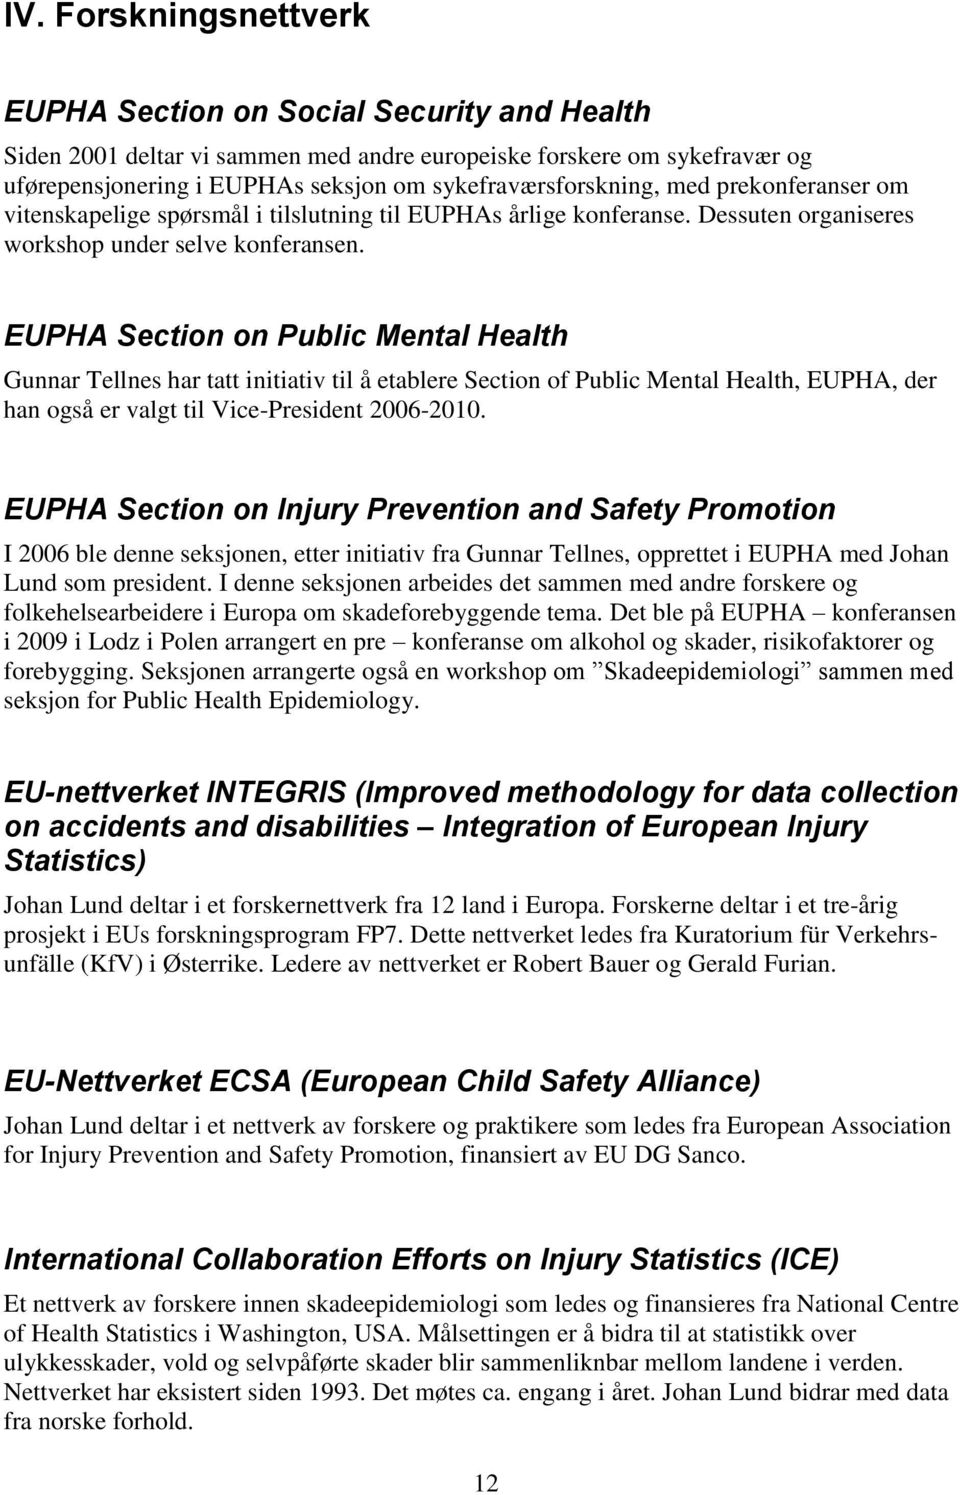 EUPHA Section on Public Mental Health Gunnar Tellnes har tatt initiativ til å etablere Section of Public Mental Health, EUPHA, der han også er valgt til Vice-President 2006-2010.